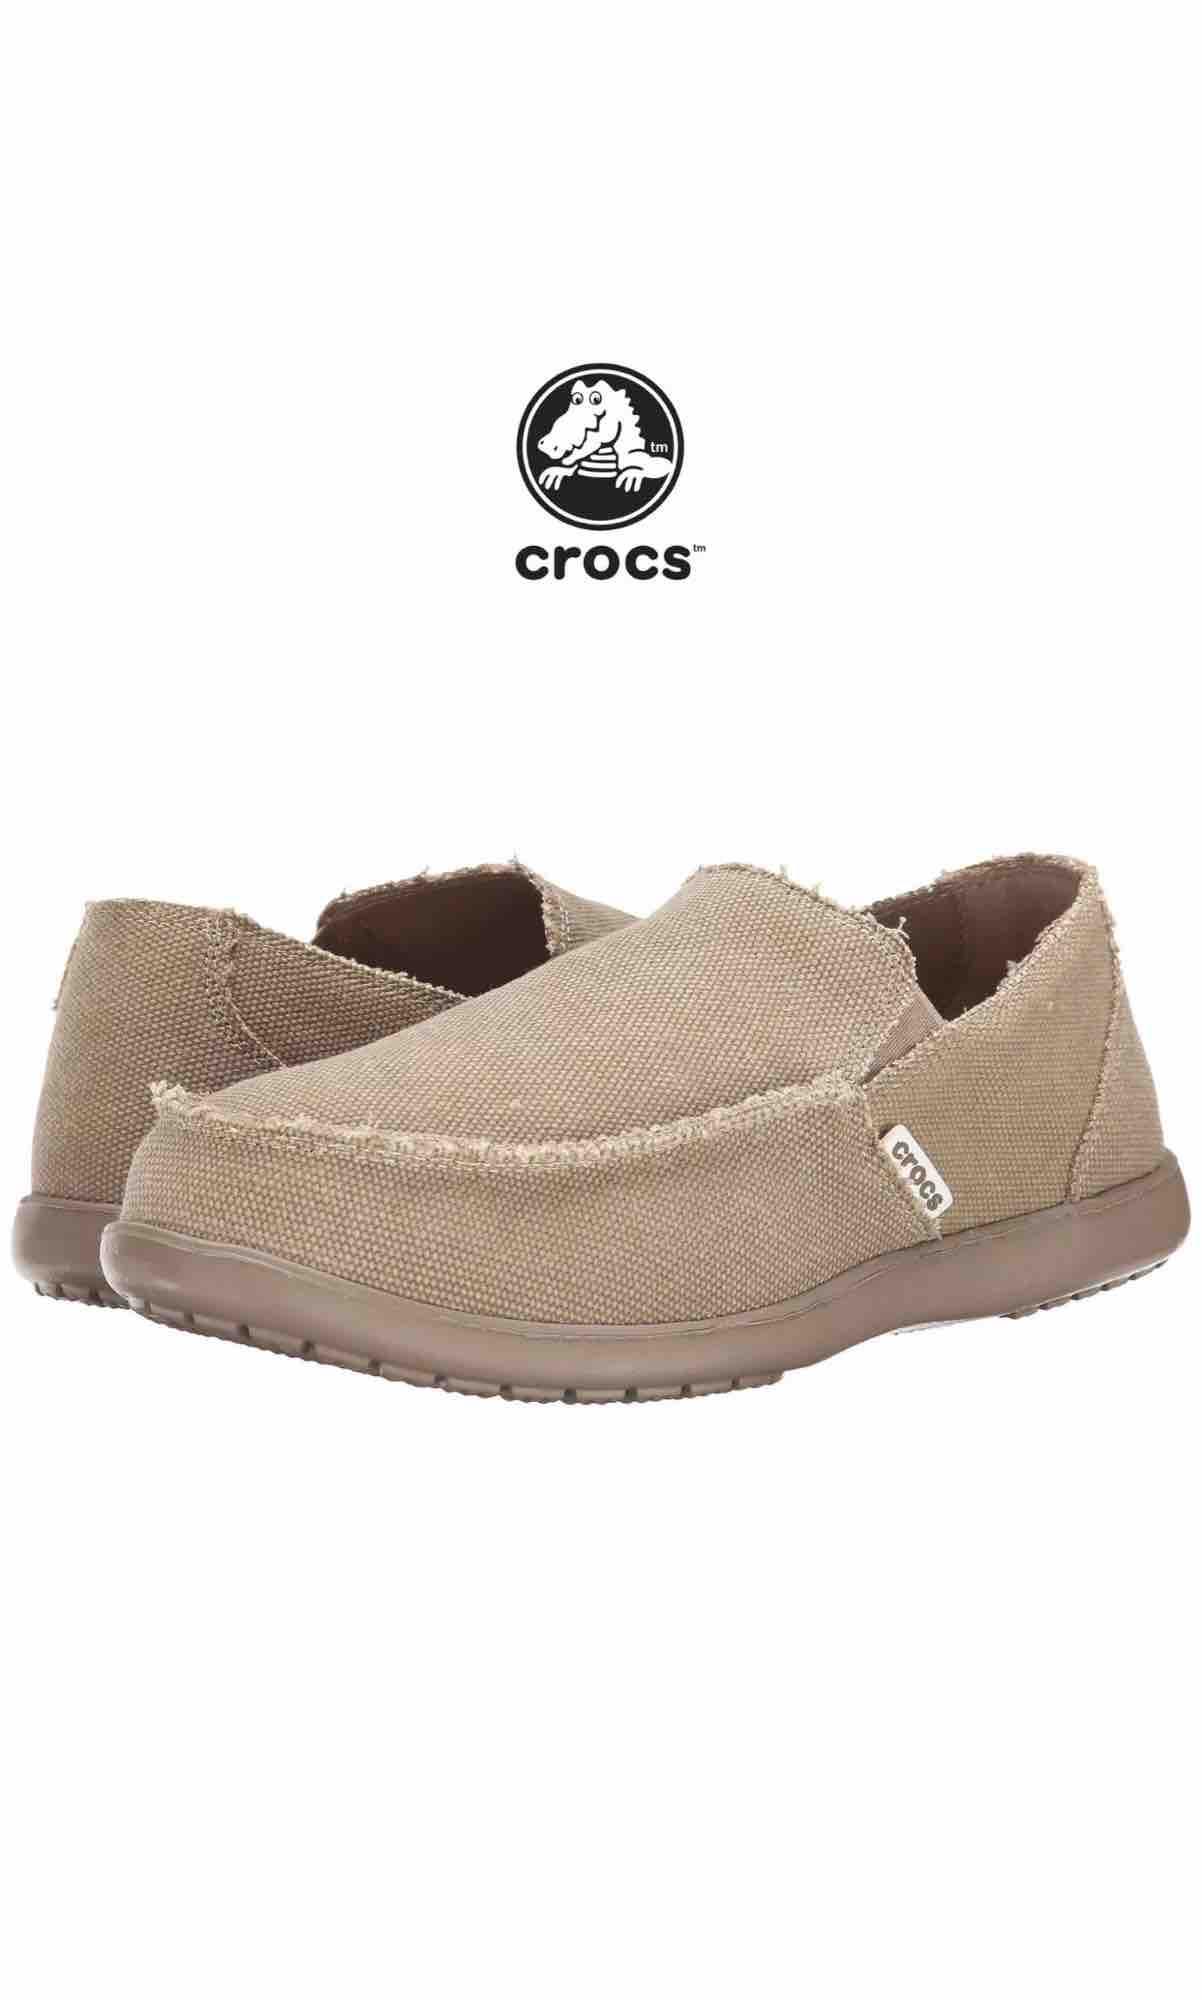 รองเท้า Crocs Santa Cruz Fashion Loafer Khaki Canvas Casual Beach